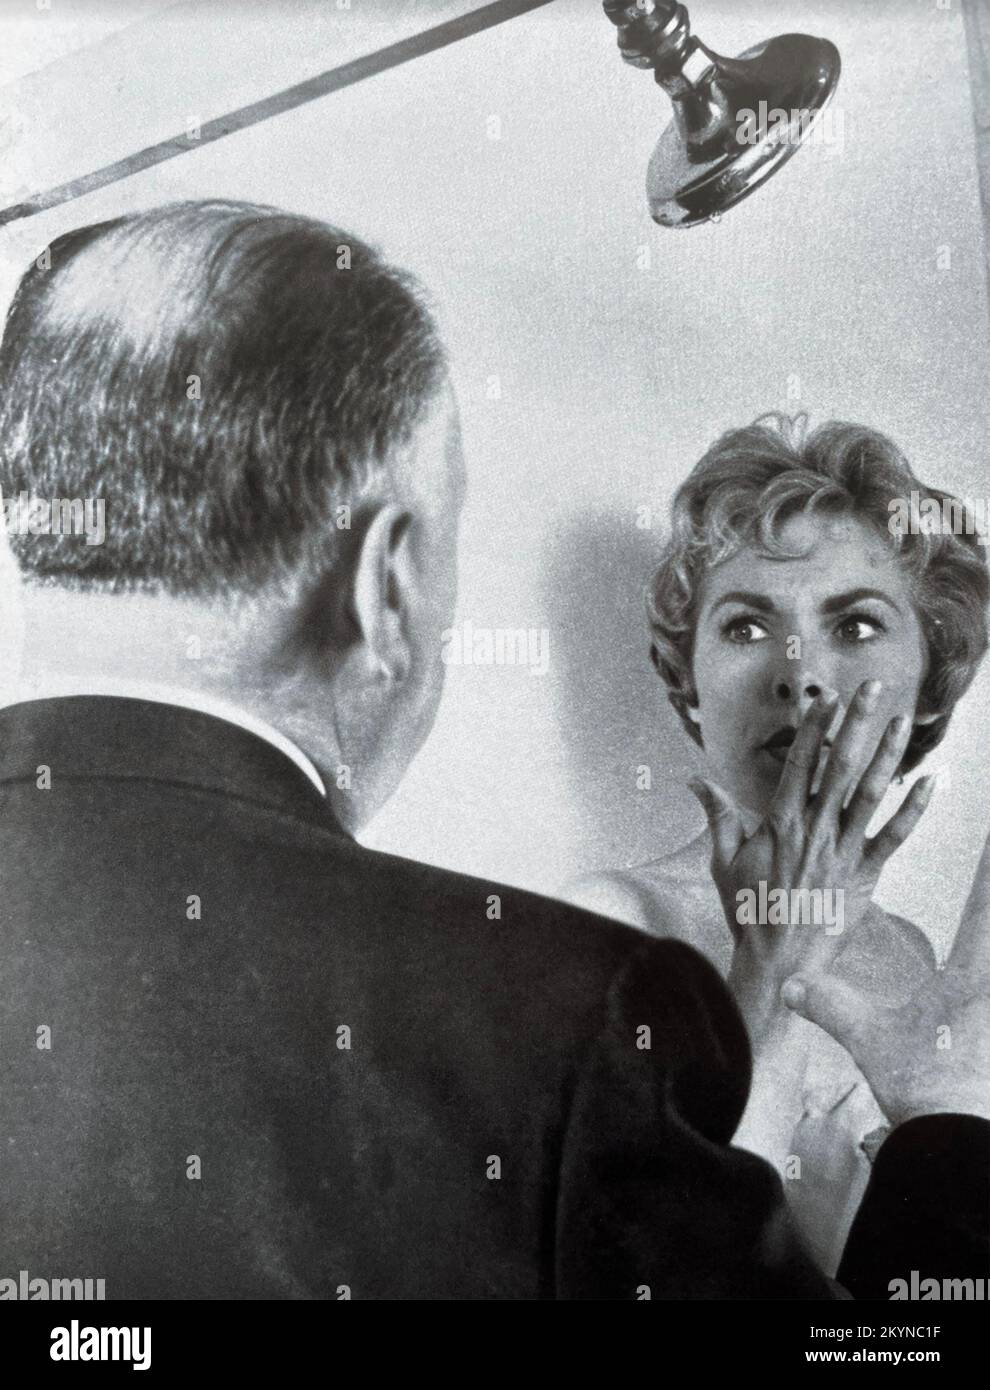 PSYCHO 1960 Paramount Pictures film avec Alfred Hitchcock dirigeant Janet Leigh dans la scène de la douche. Banque D'Images